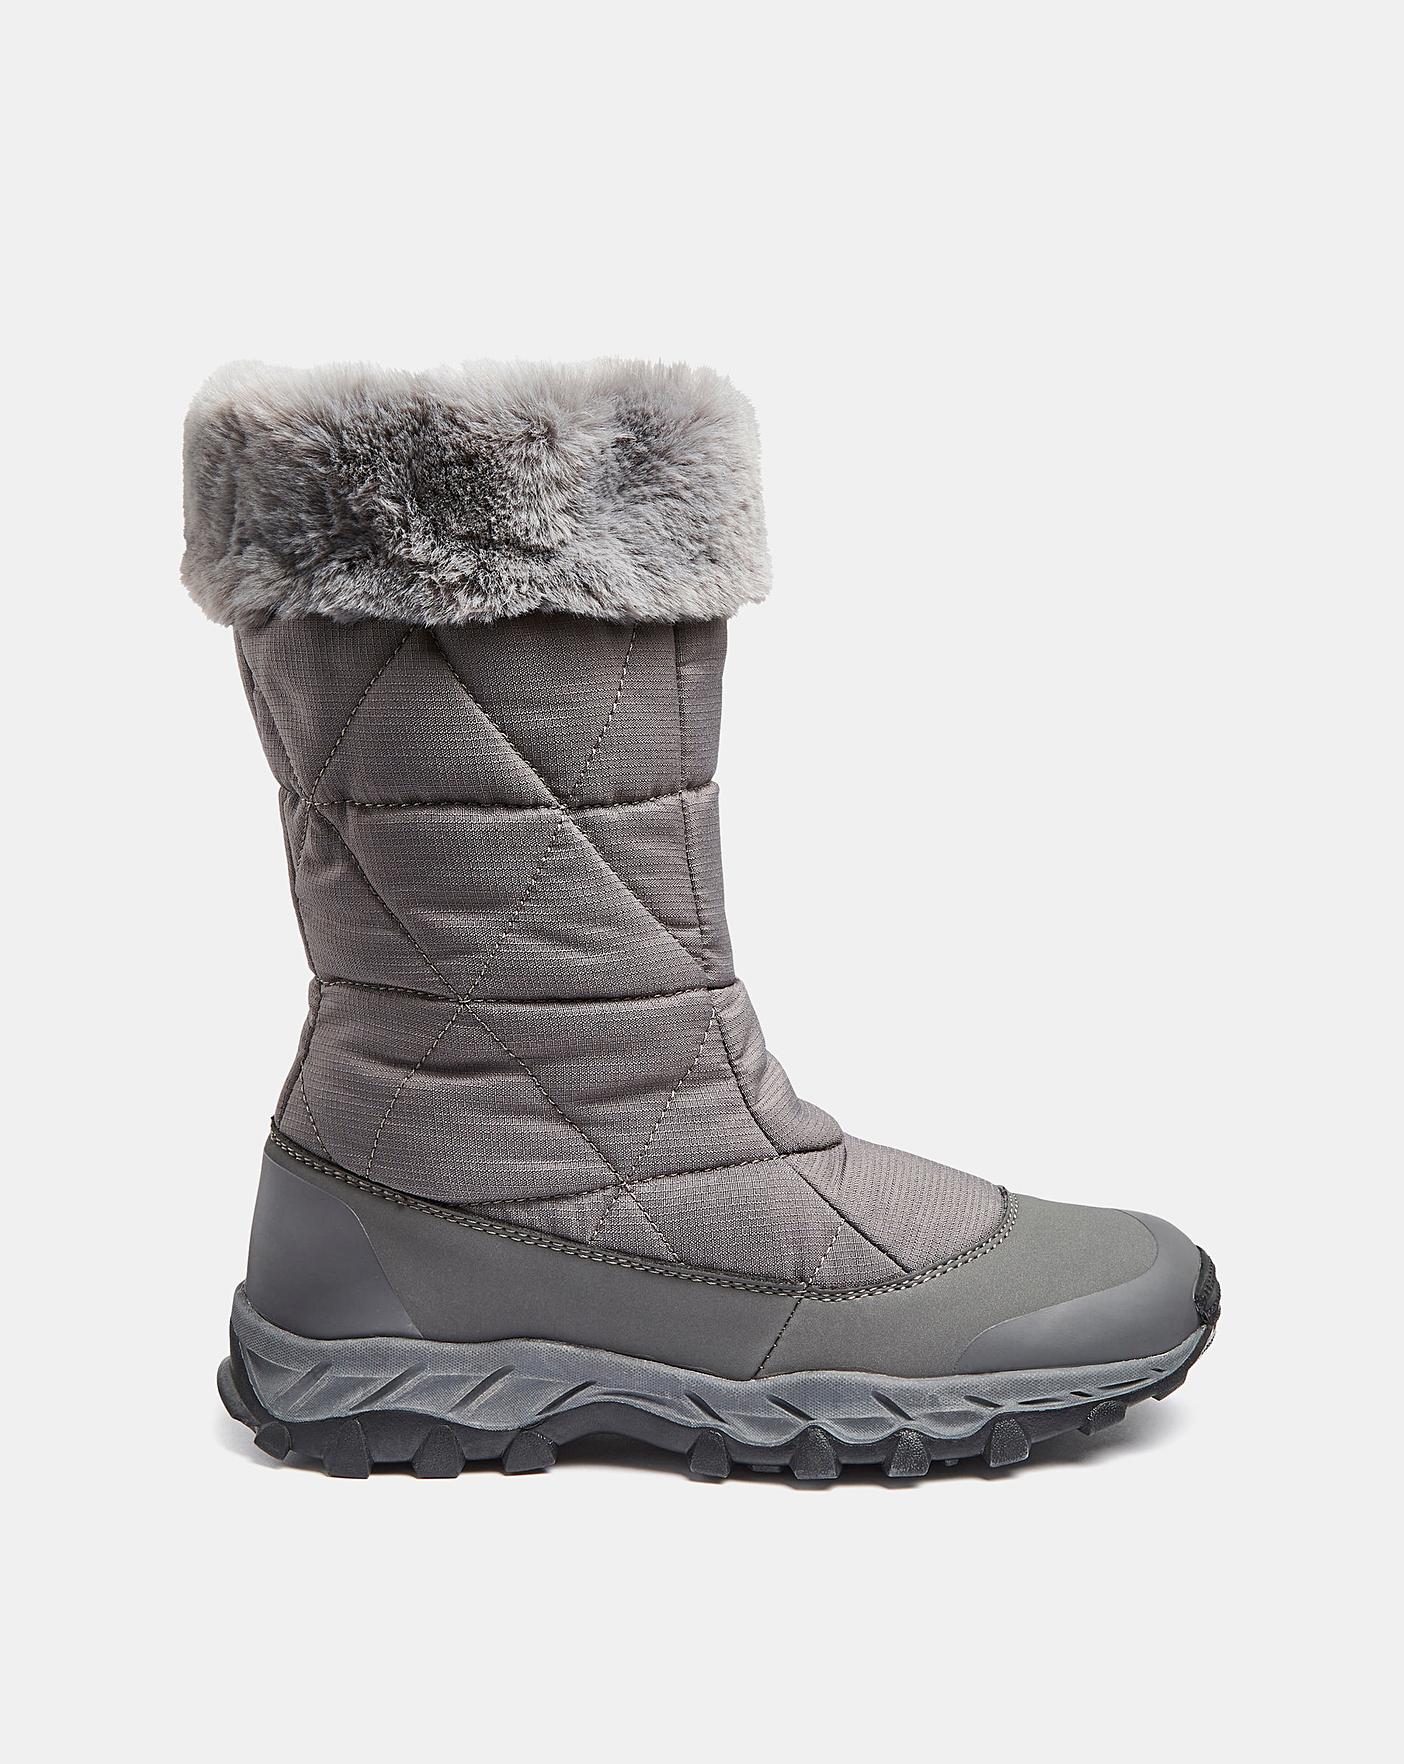 Ladies Snow Boot EEE Fit | Simply Be